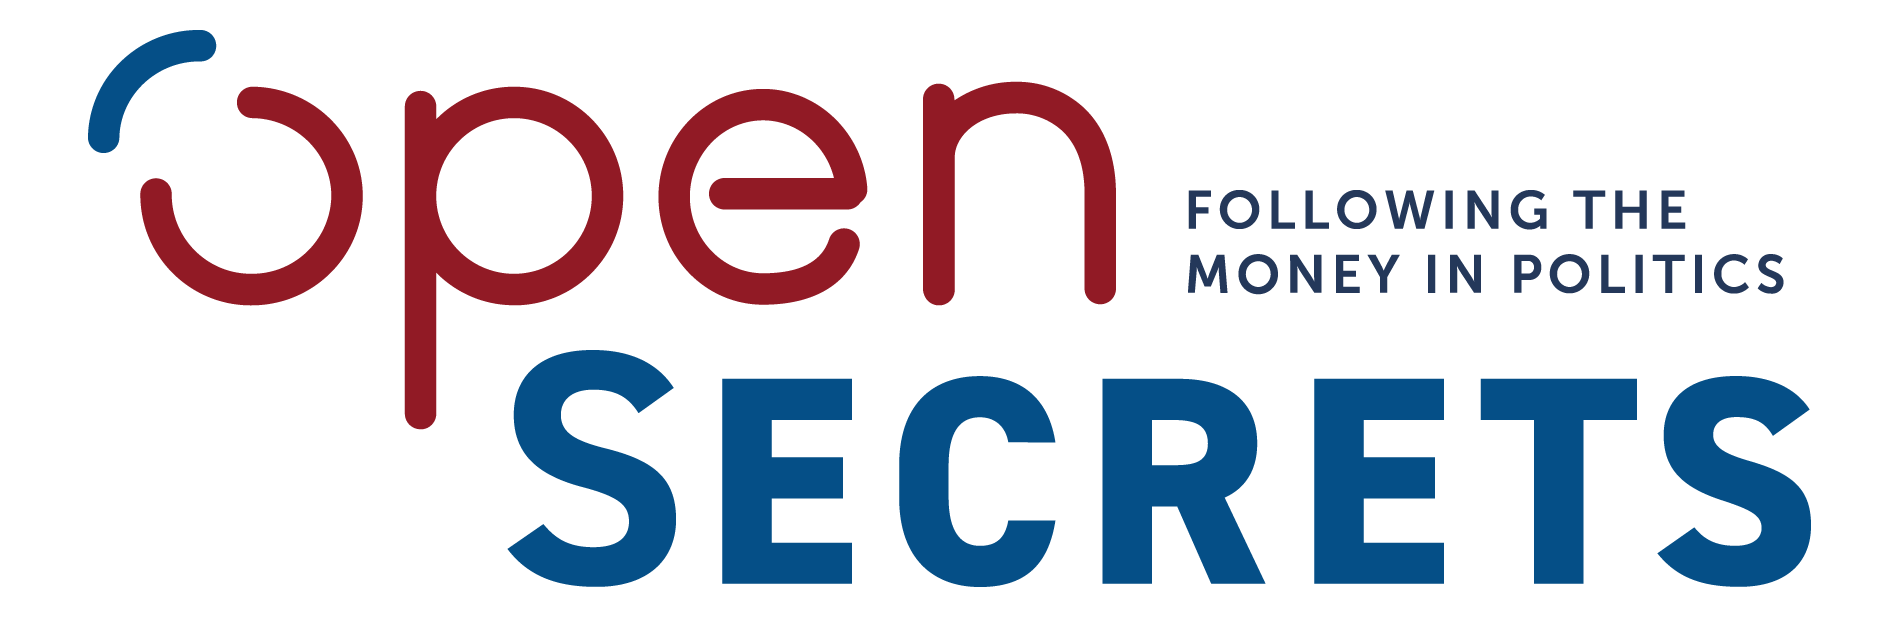 open secrets logo